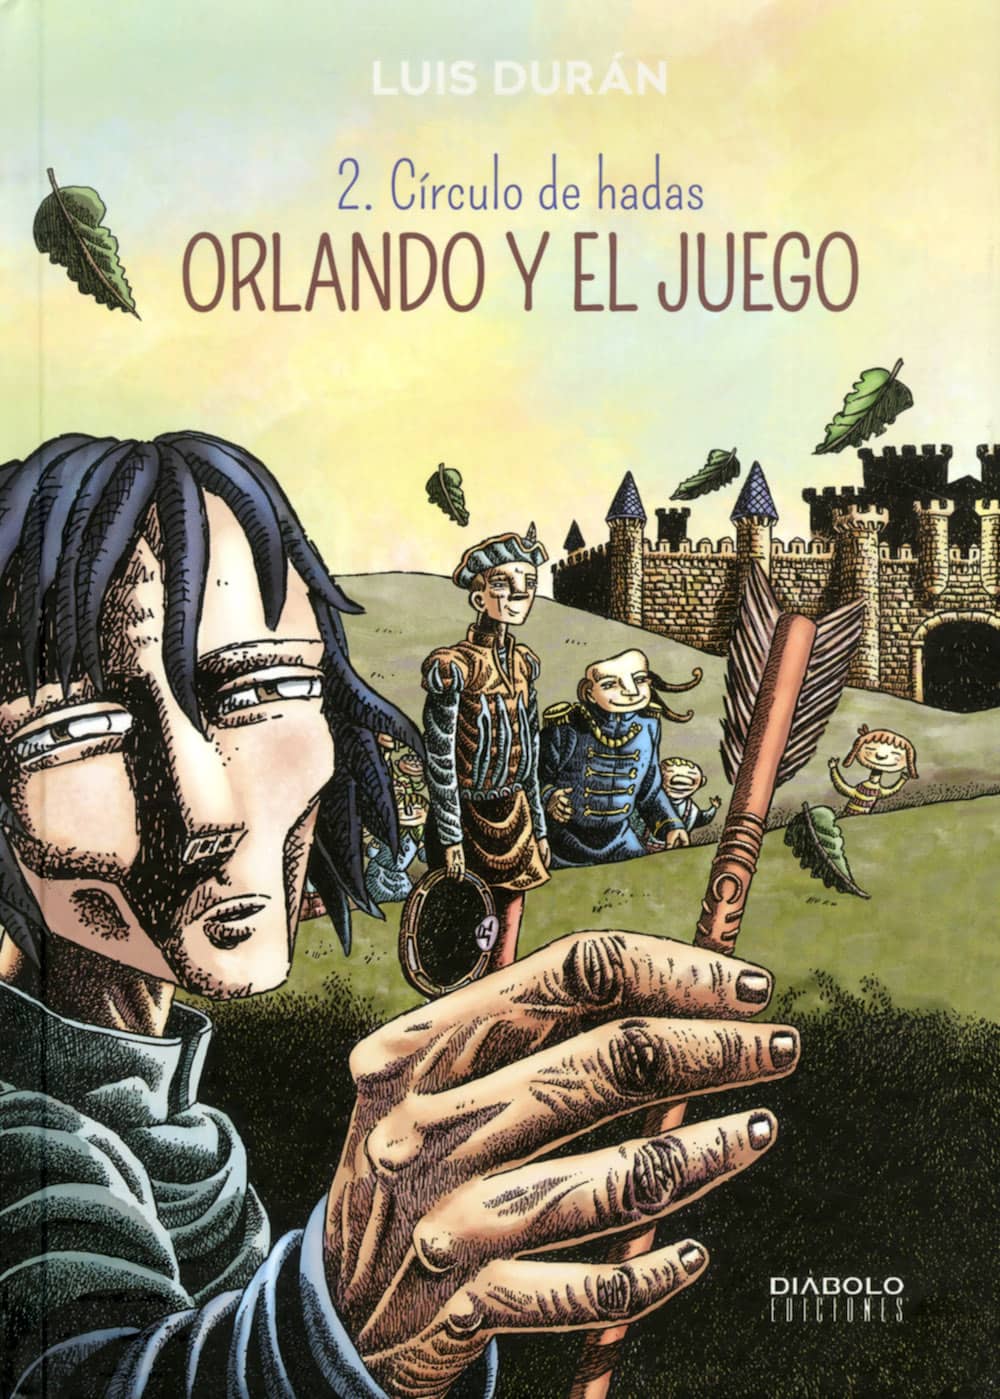 ORLANDO Y EL JUEGO 02 (CIRCULO DE HADAS)